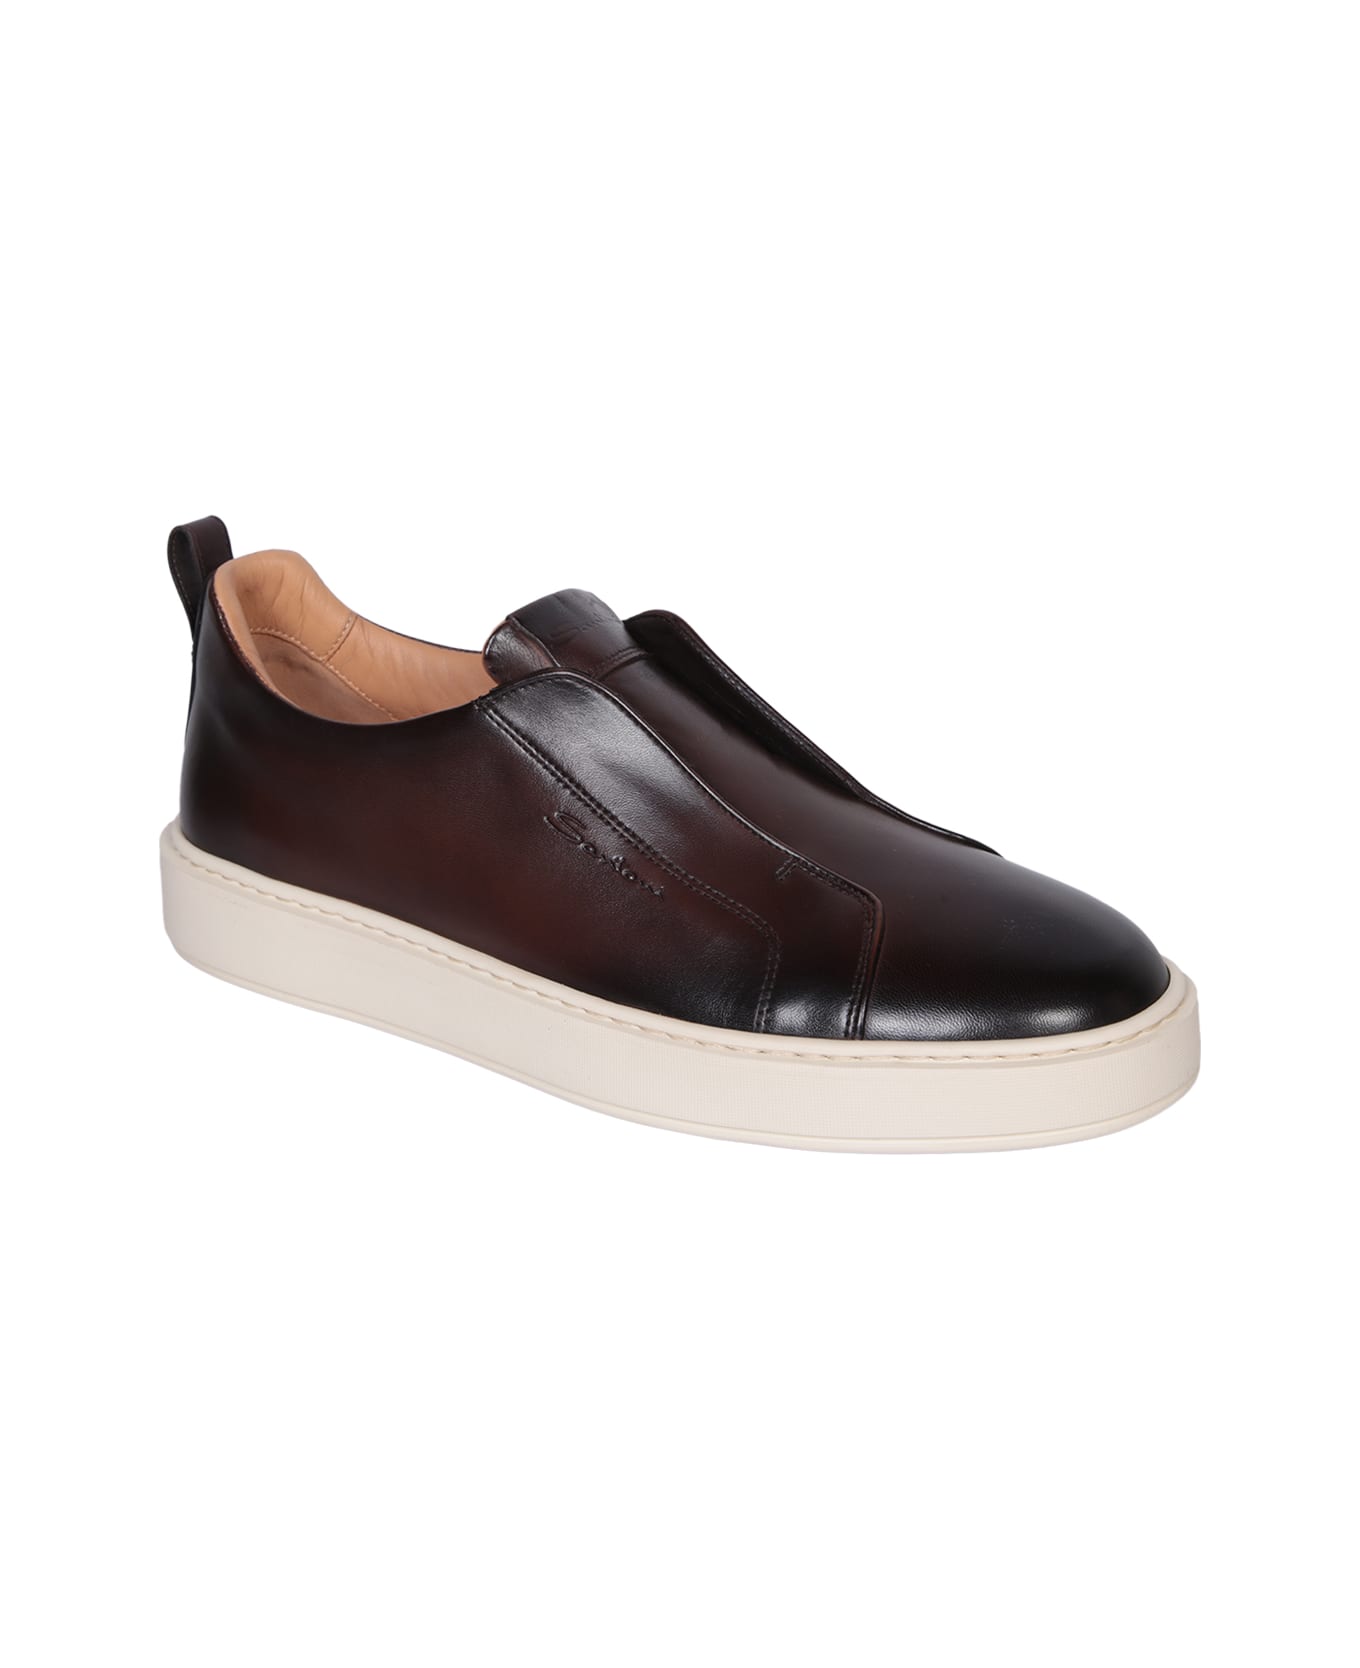 Santoni Victor Leather Slip-on Brown Sneakers - Brown スニーカー